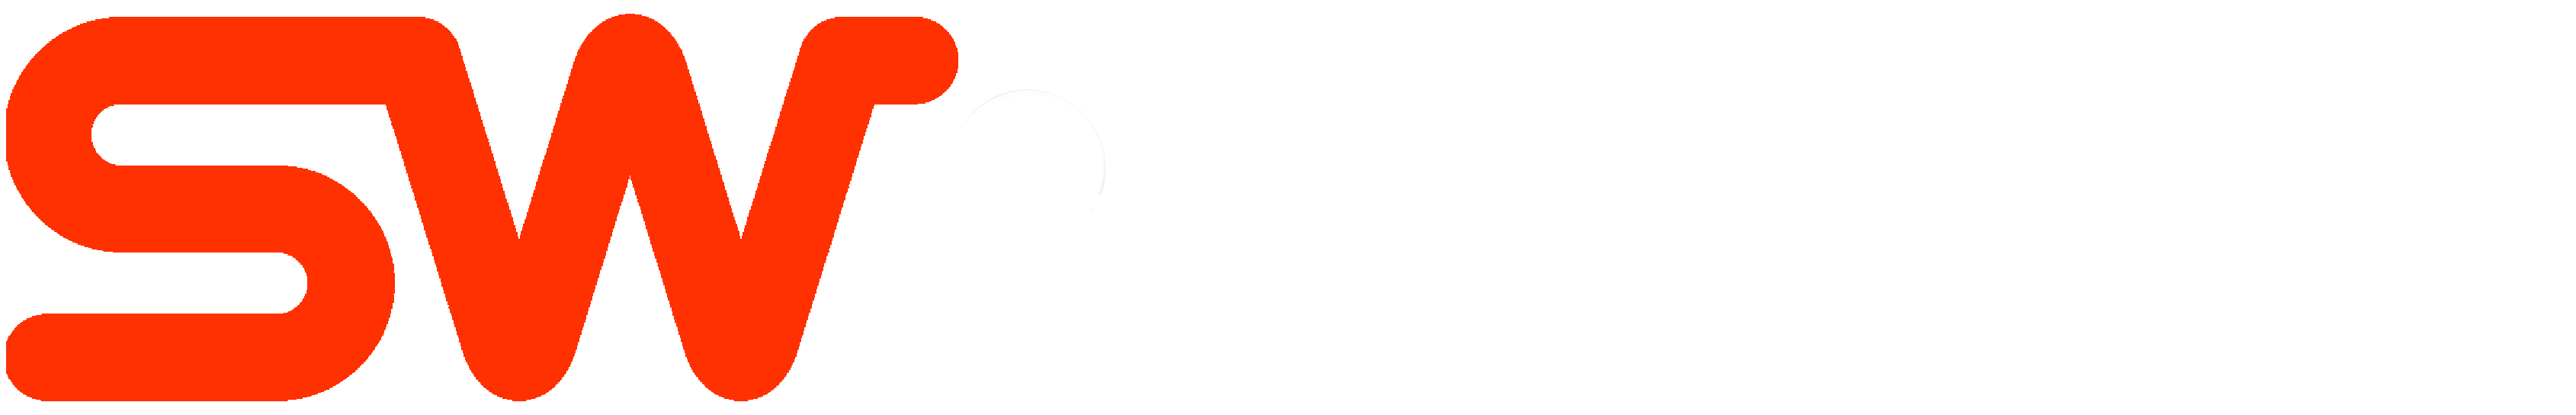 Seth Wadley Chevrolet of Perry Español-logo